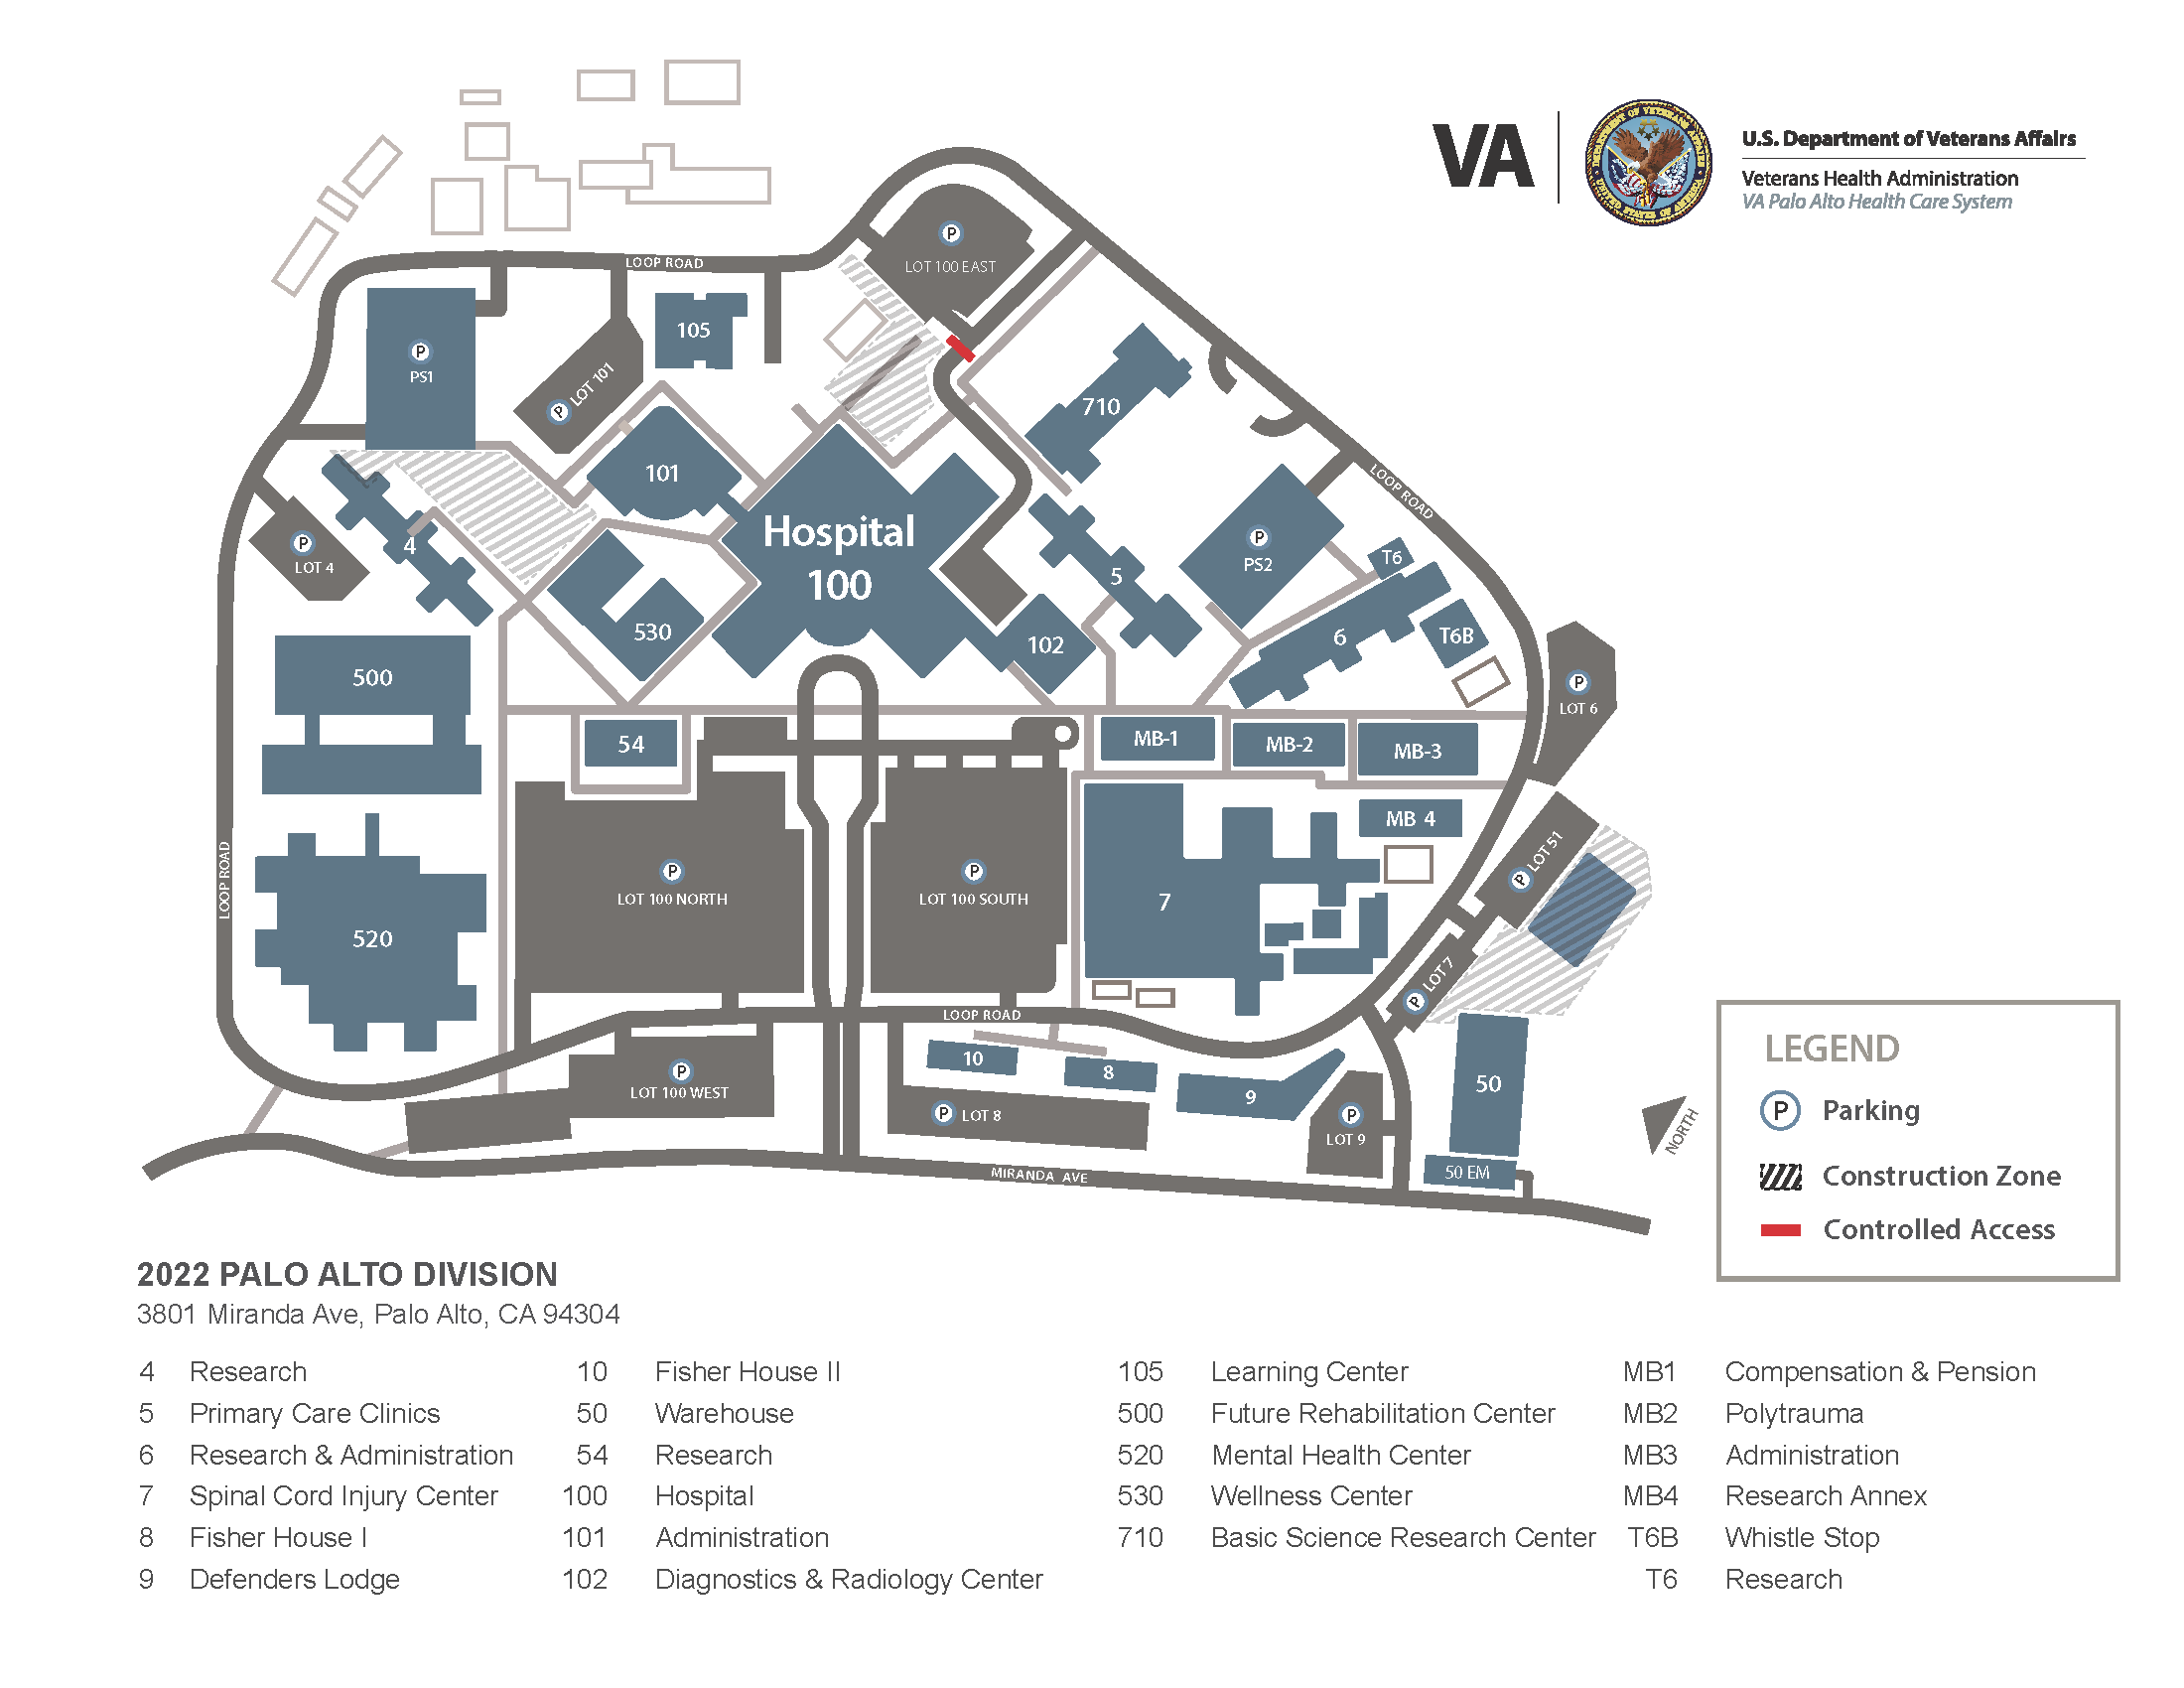 2022 PAD Campus Map (Landscape) 7 22v3 